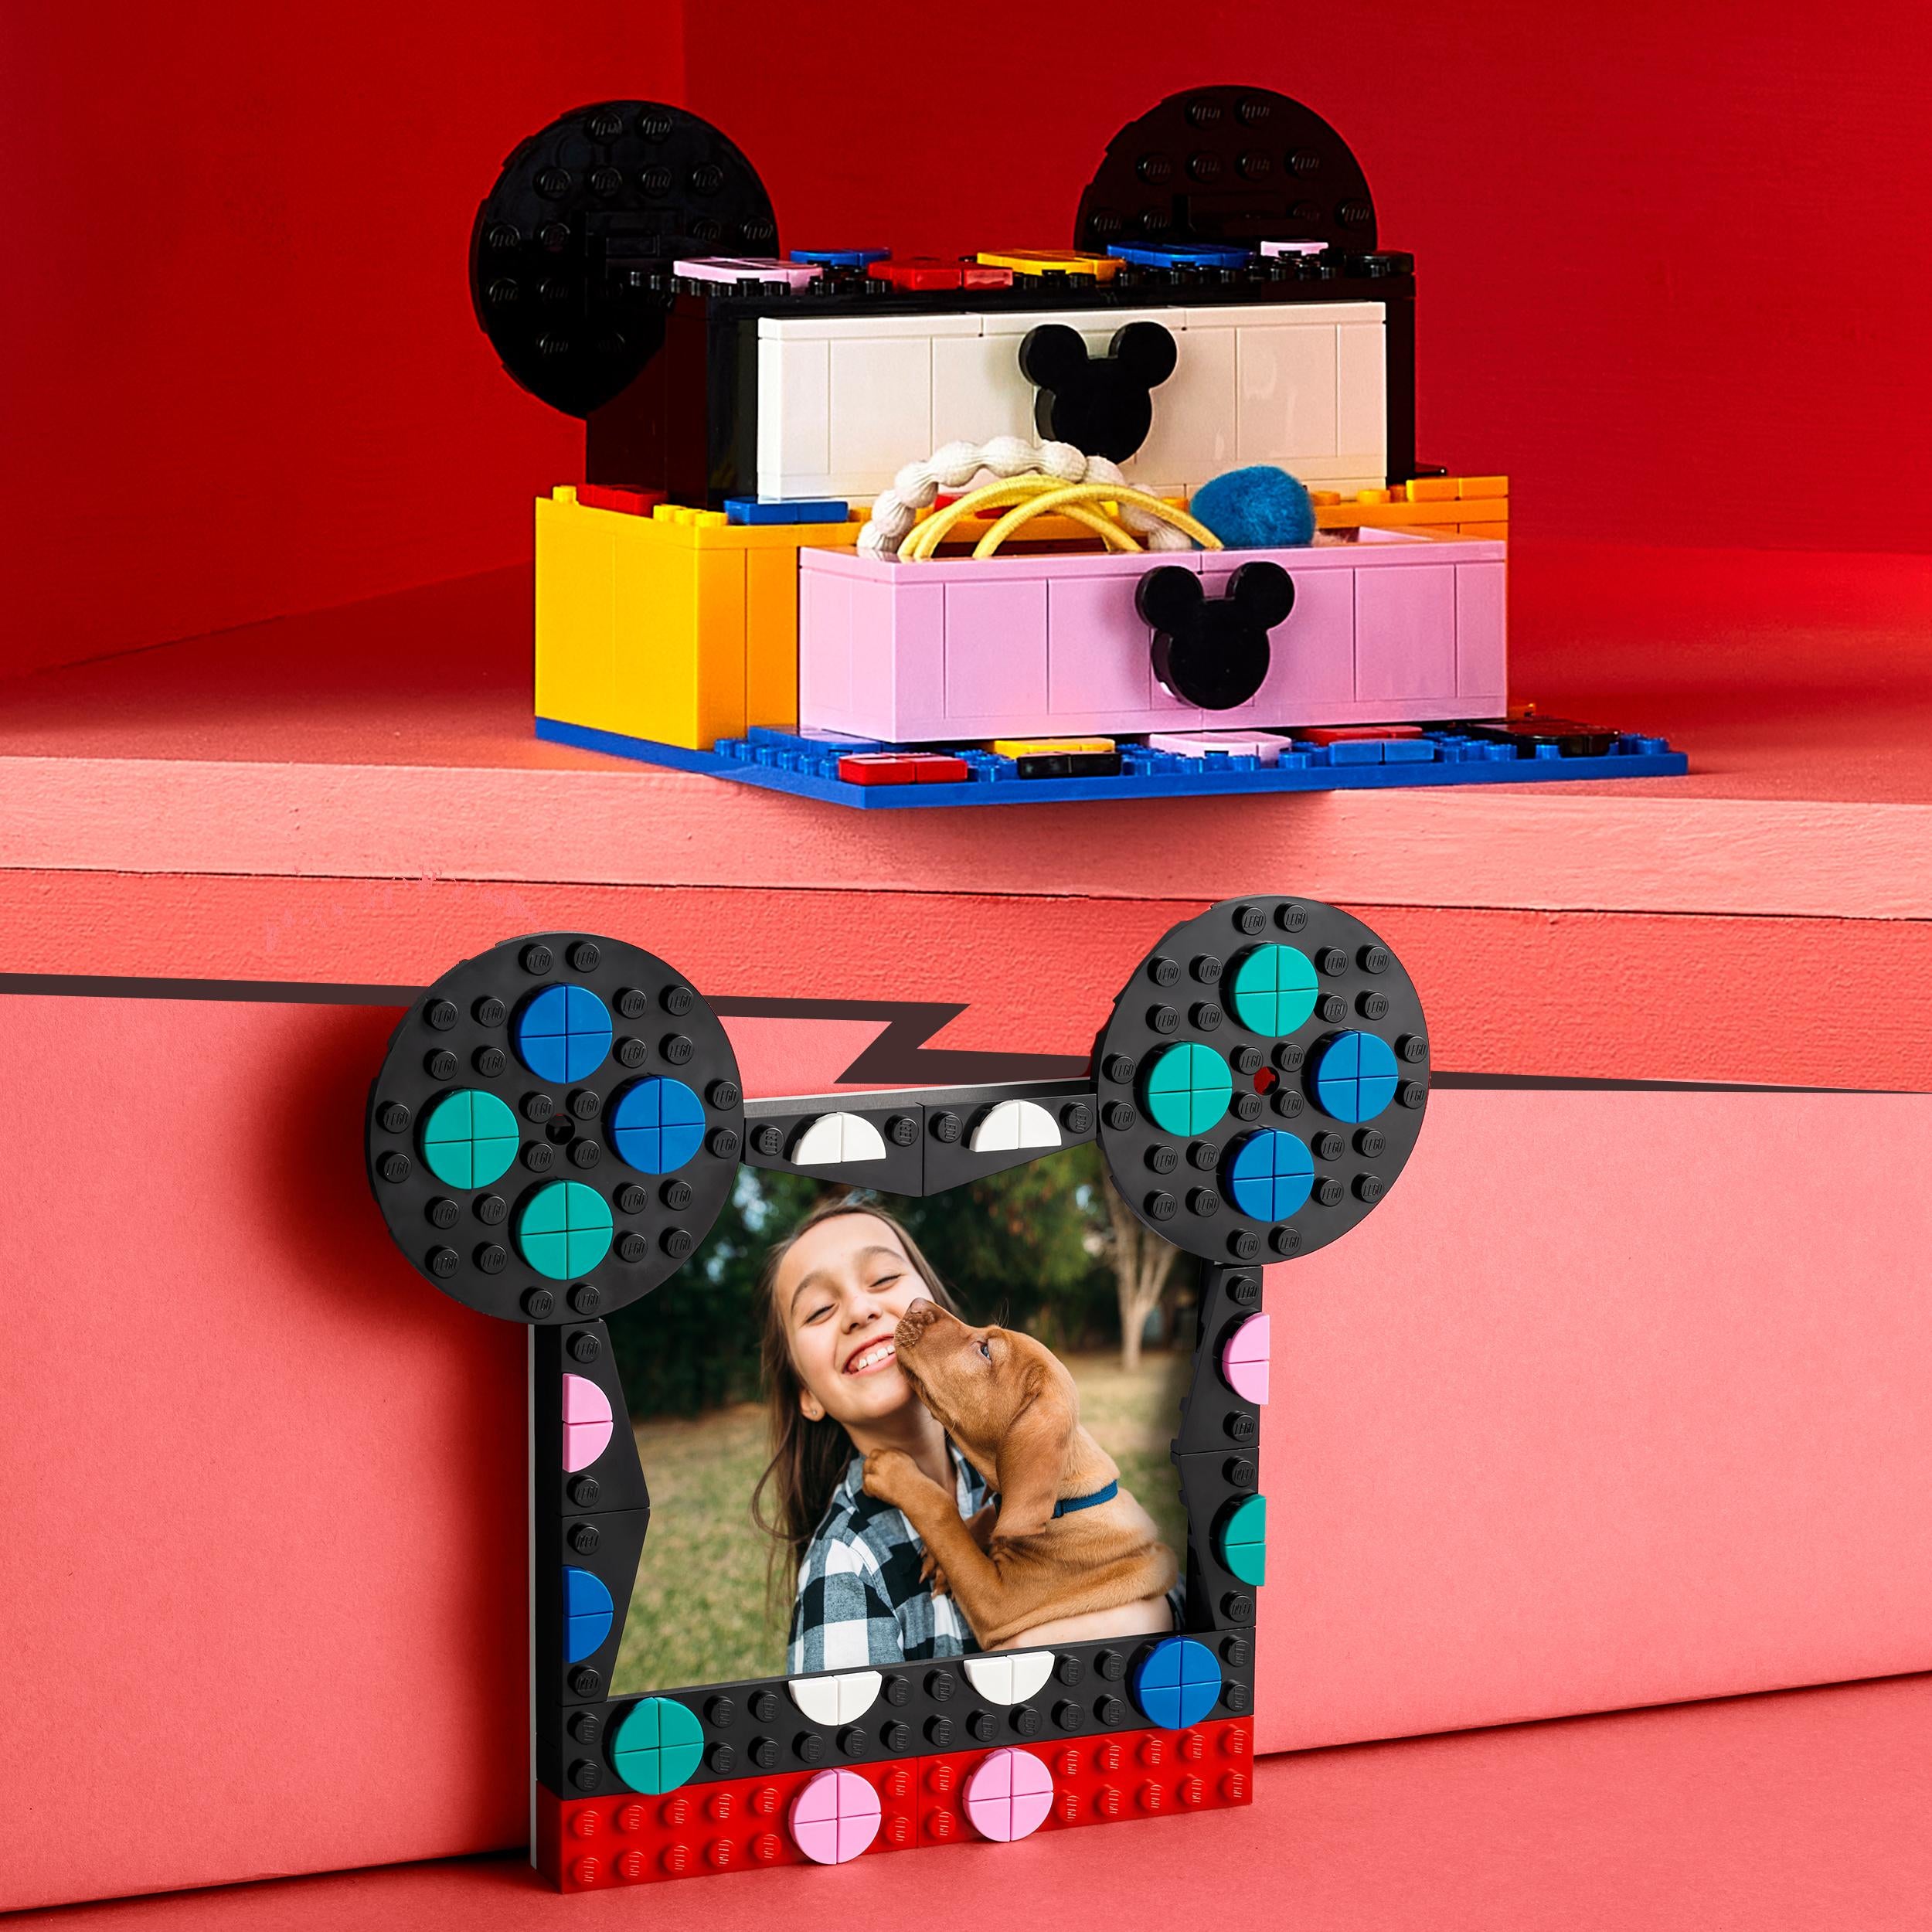 41964 LEGO® Dots - Il KIT Back to School di Topolino e Minnie